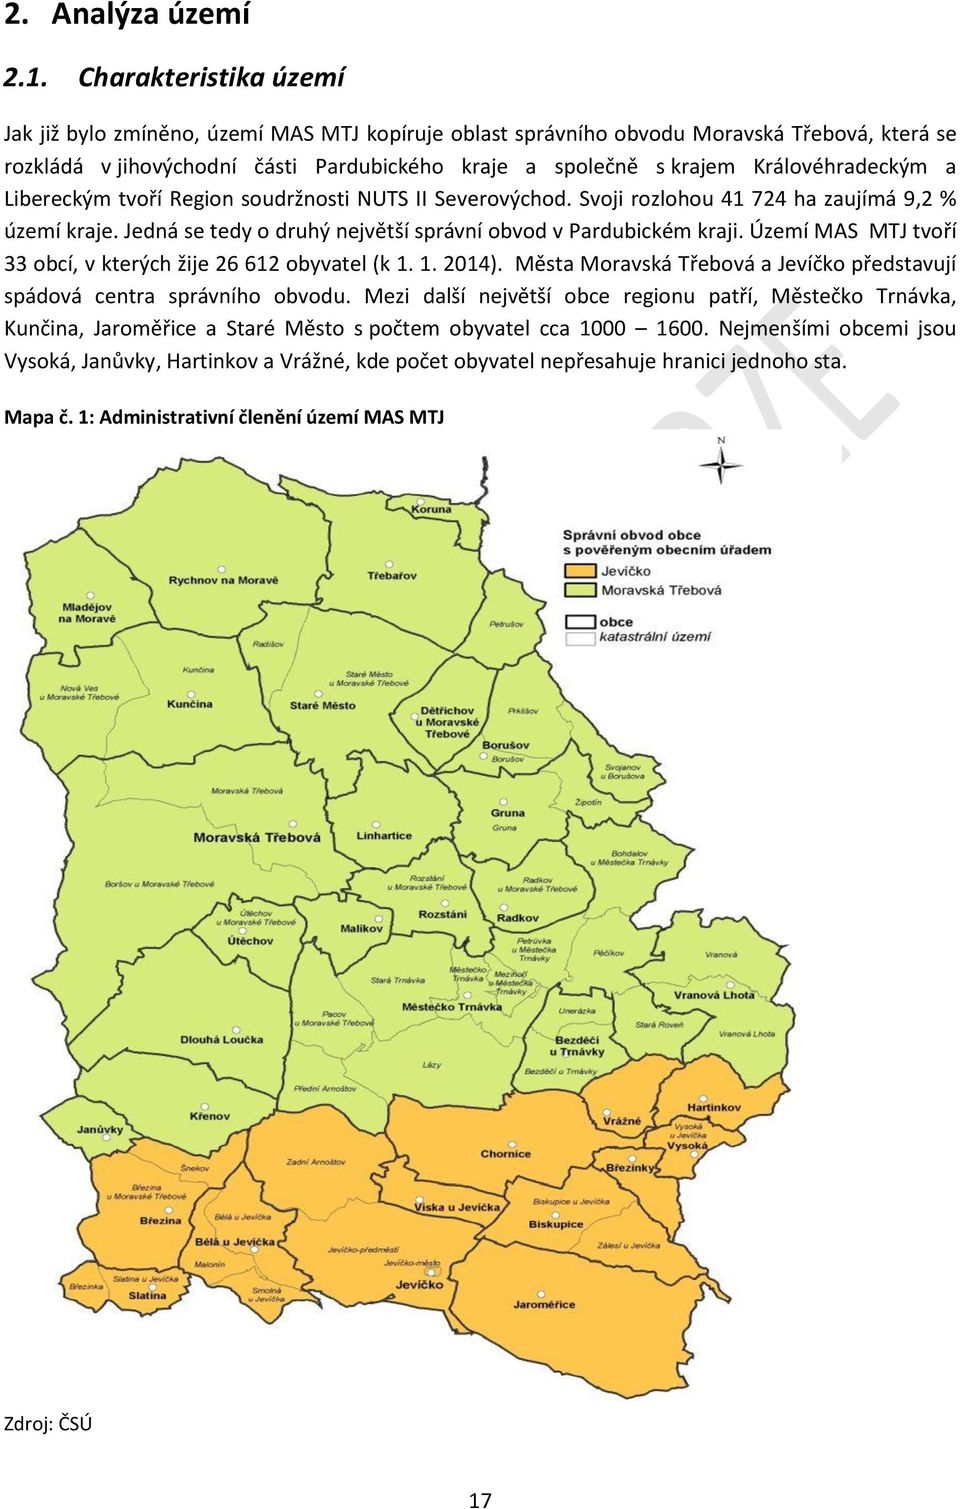 Královéhradeckým a Libereckým tvoří Region soudržnosti NUTS II Severovýchod. Svoji rozlohou 41 724 ha zaujímá 9,2 % území kraje. Jedná se tedy o druhý největší správní obvod v Pardubickém kraji.